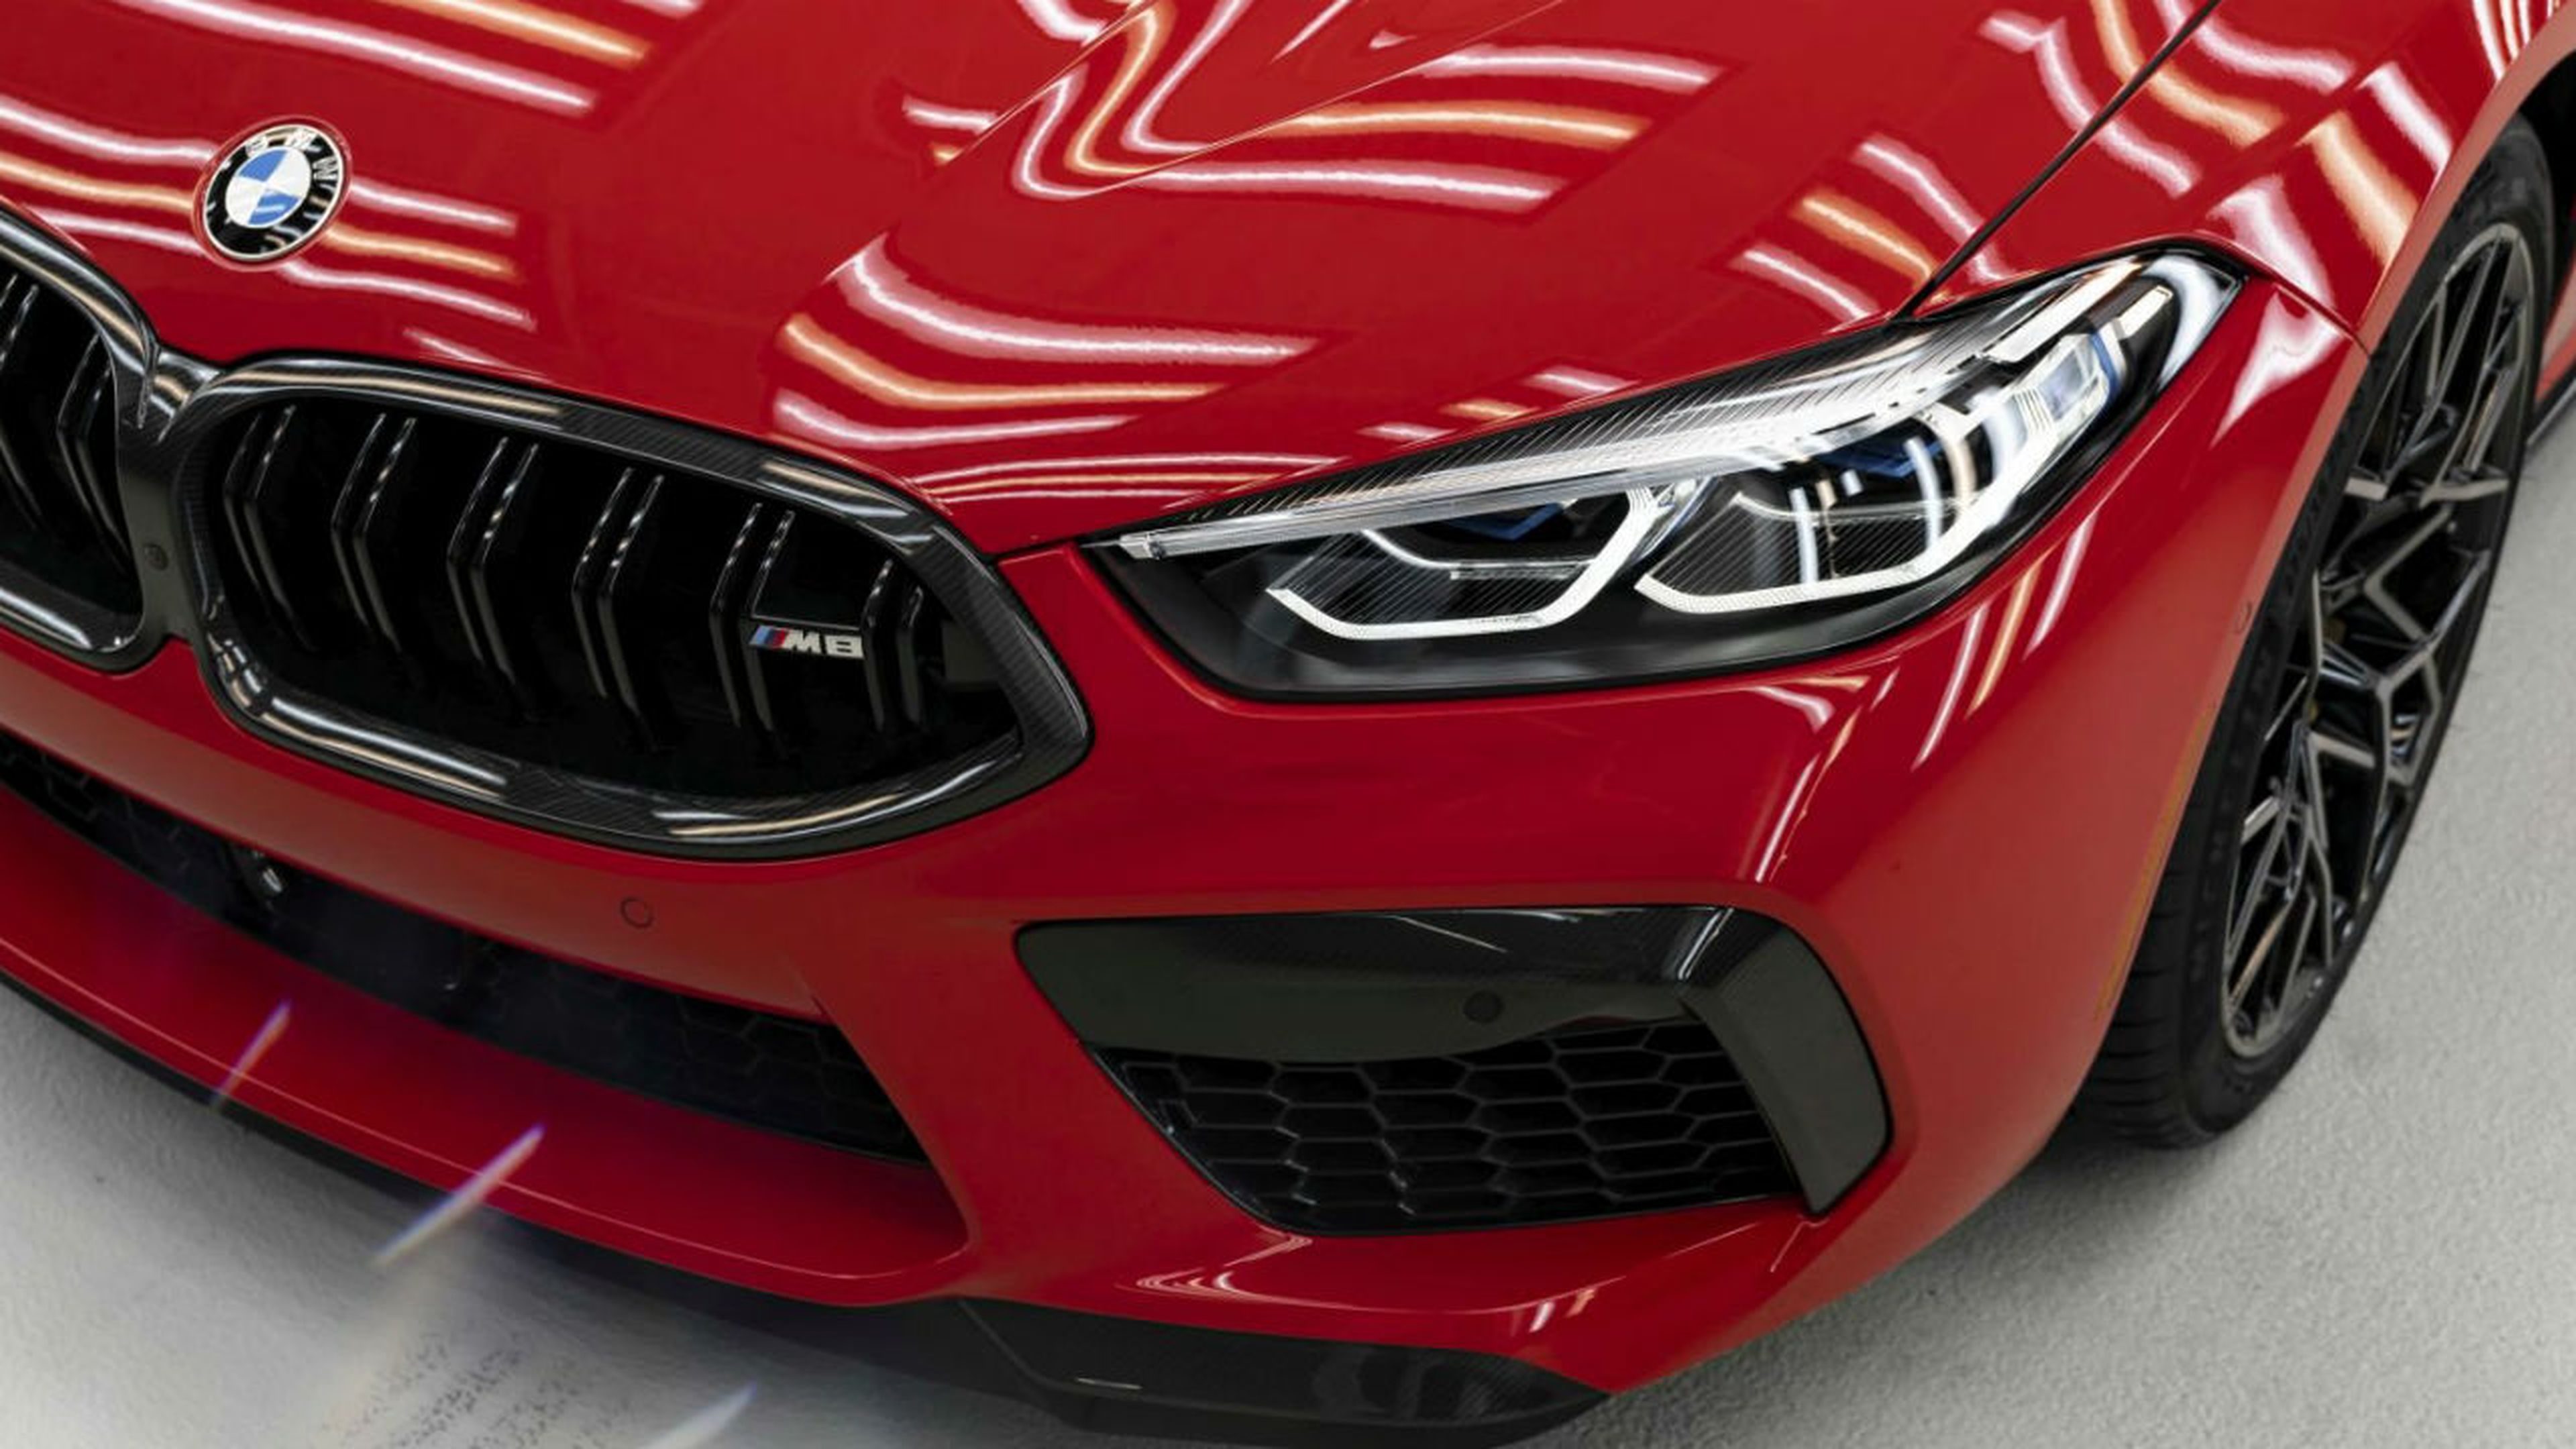 Tan sólo 10 unidades de esta edición del BMW M8 Competition vendrán pintadas en este color rojo.